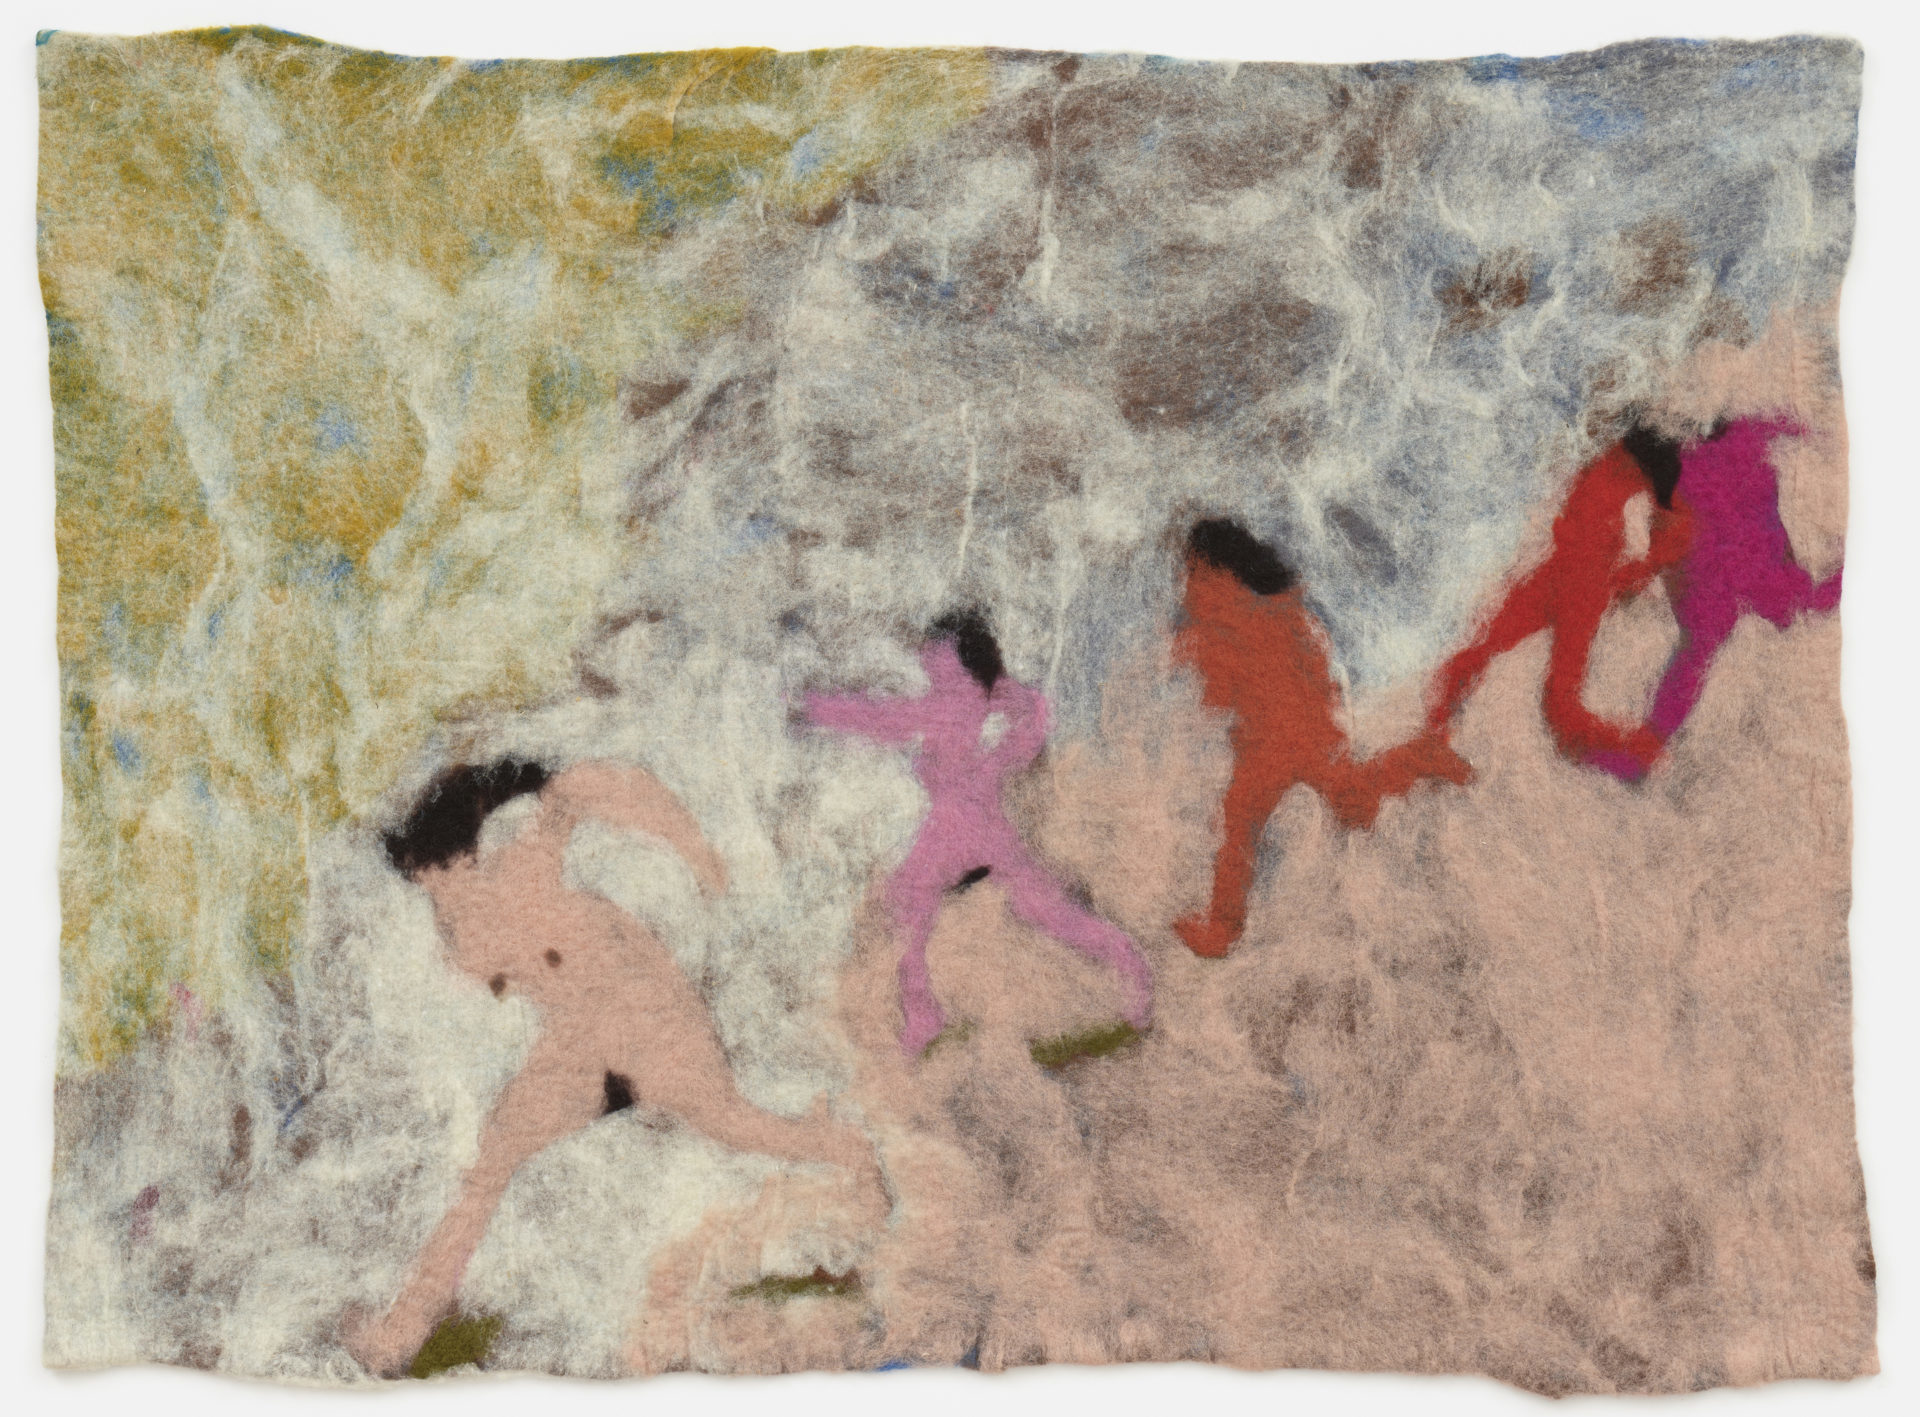 Marlon Wobst, Die Flucht (L’Echappée-The Escape), K51075, 110 x 148 cm, feutre de laine, 2019. Courtesy Marlon Wobst & Galerie Maria Lund, Paris.